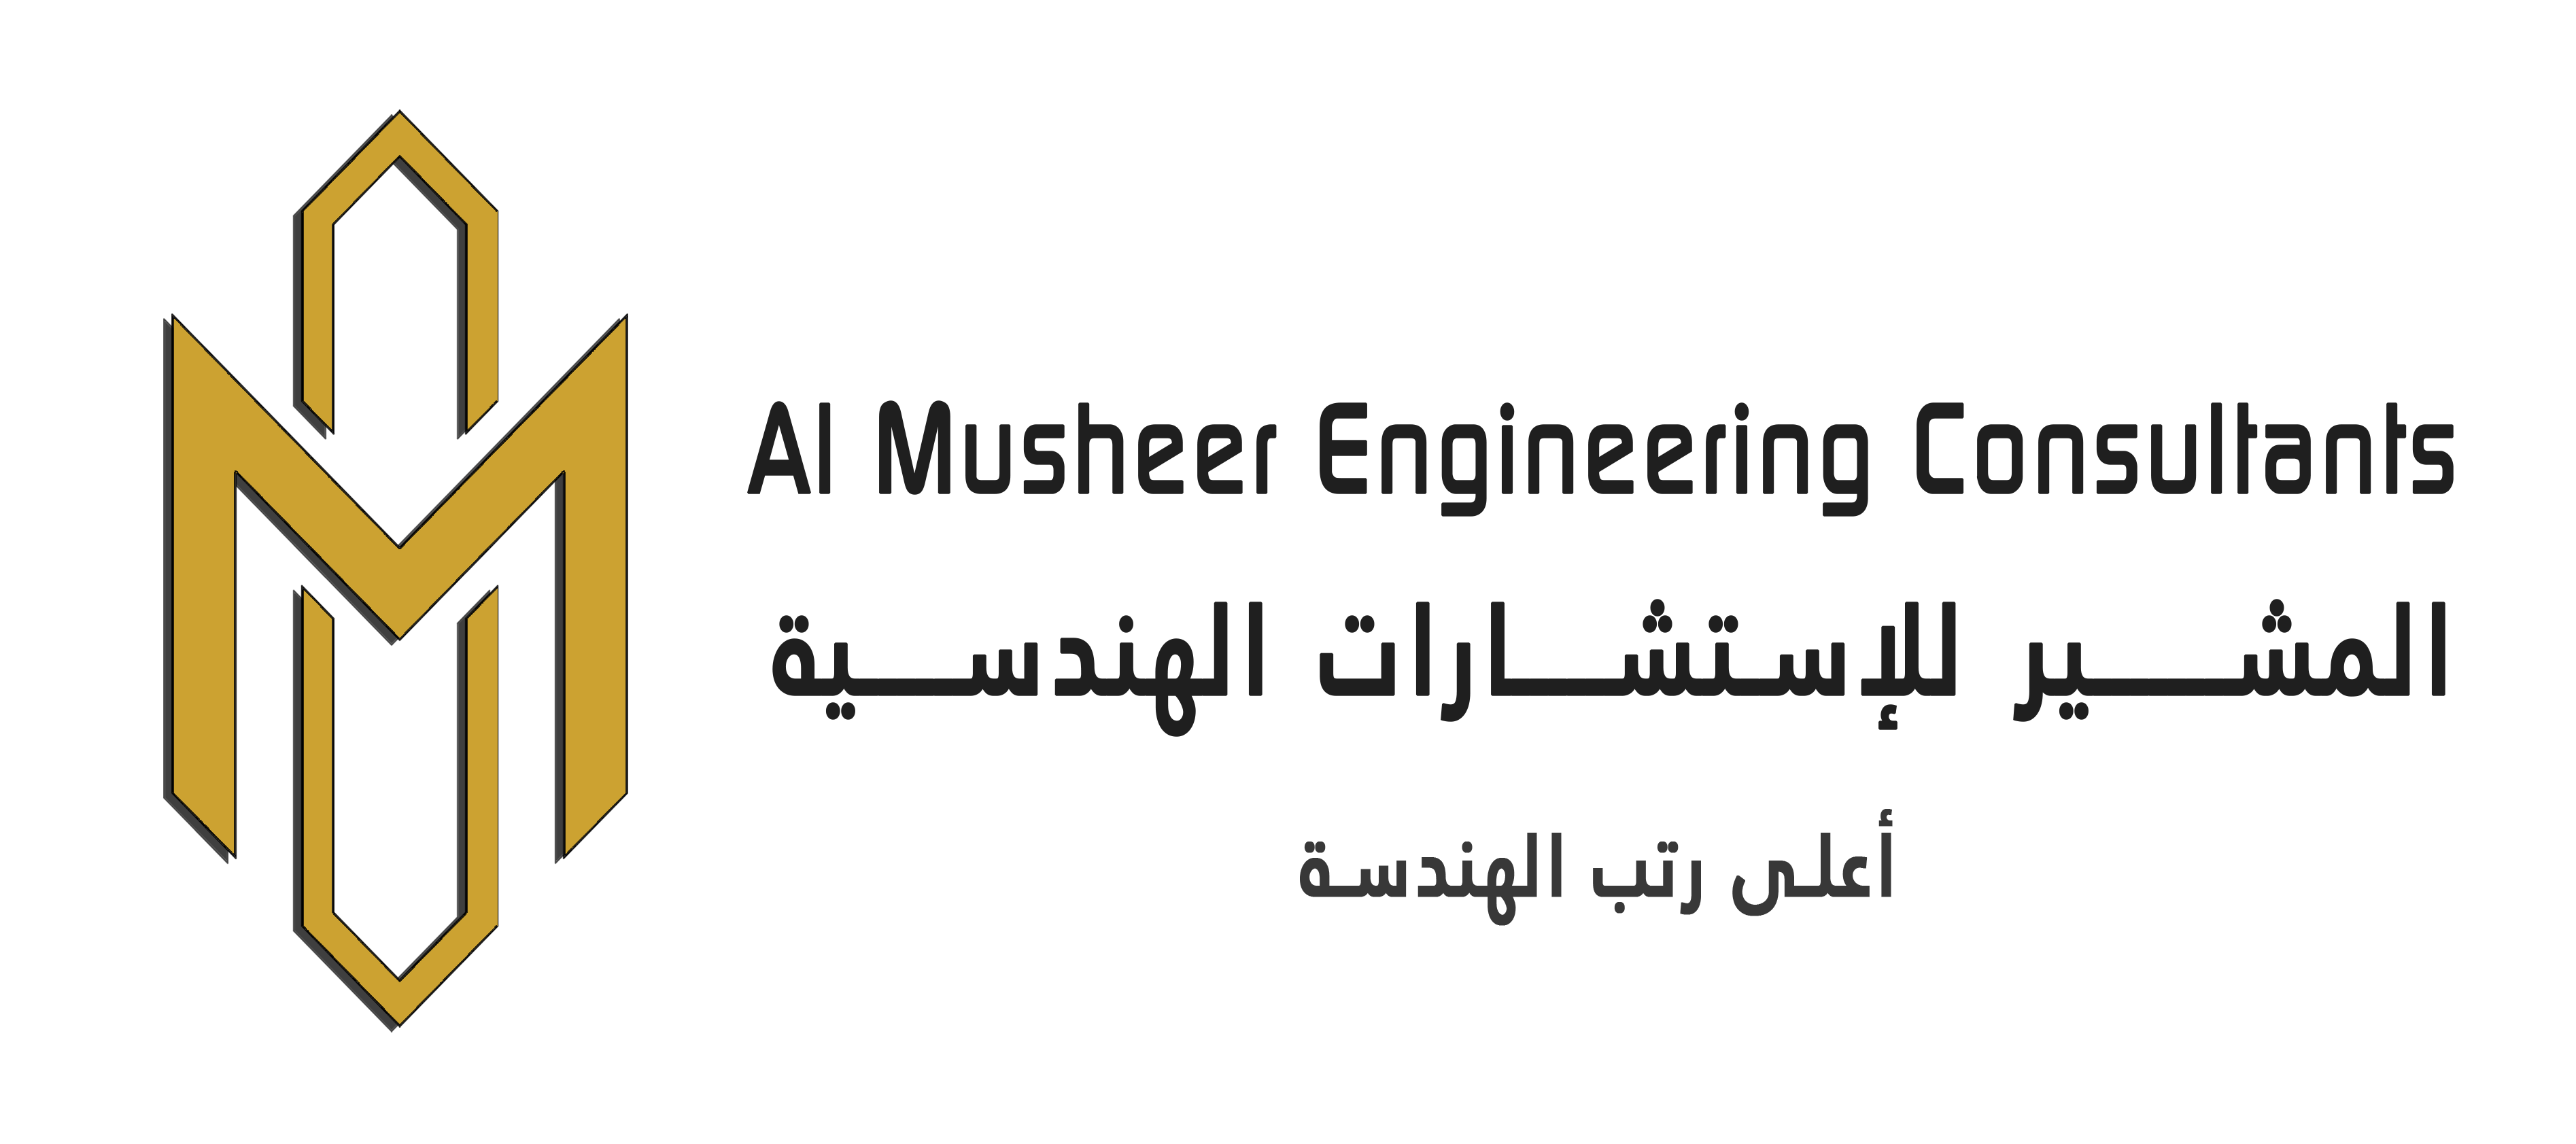 Al Musheer